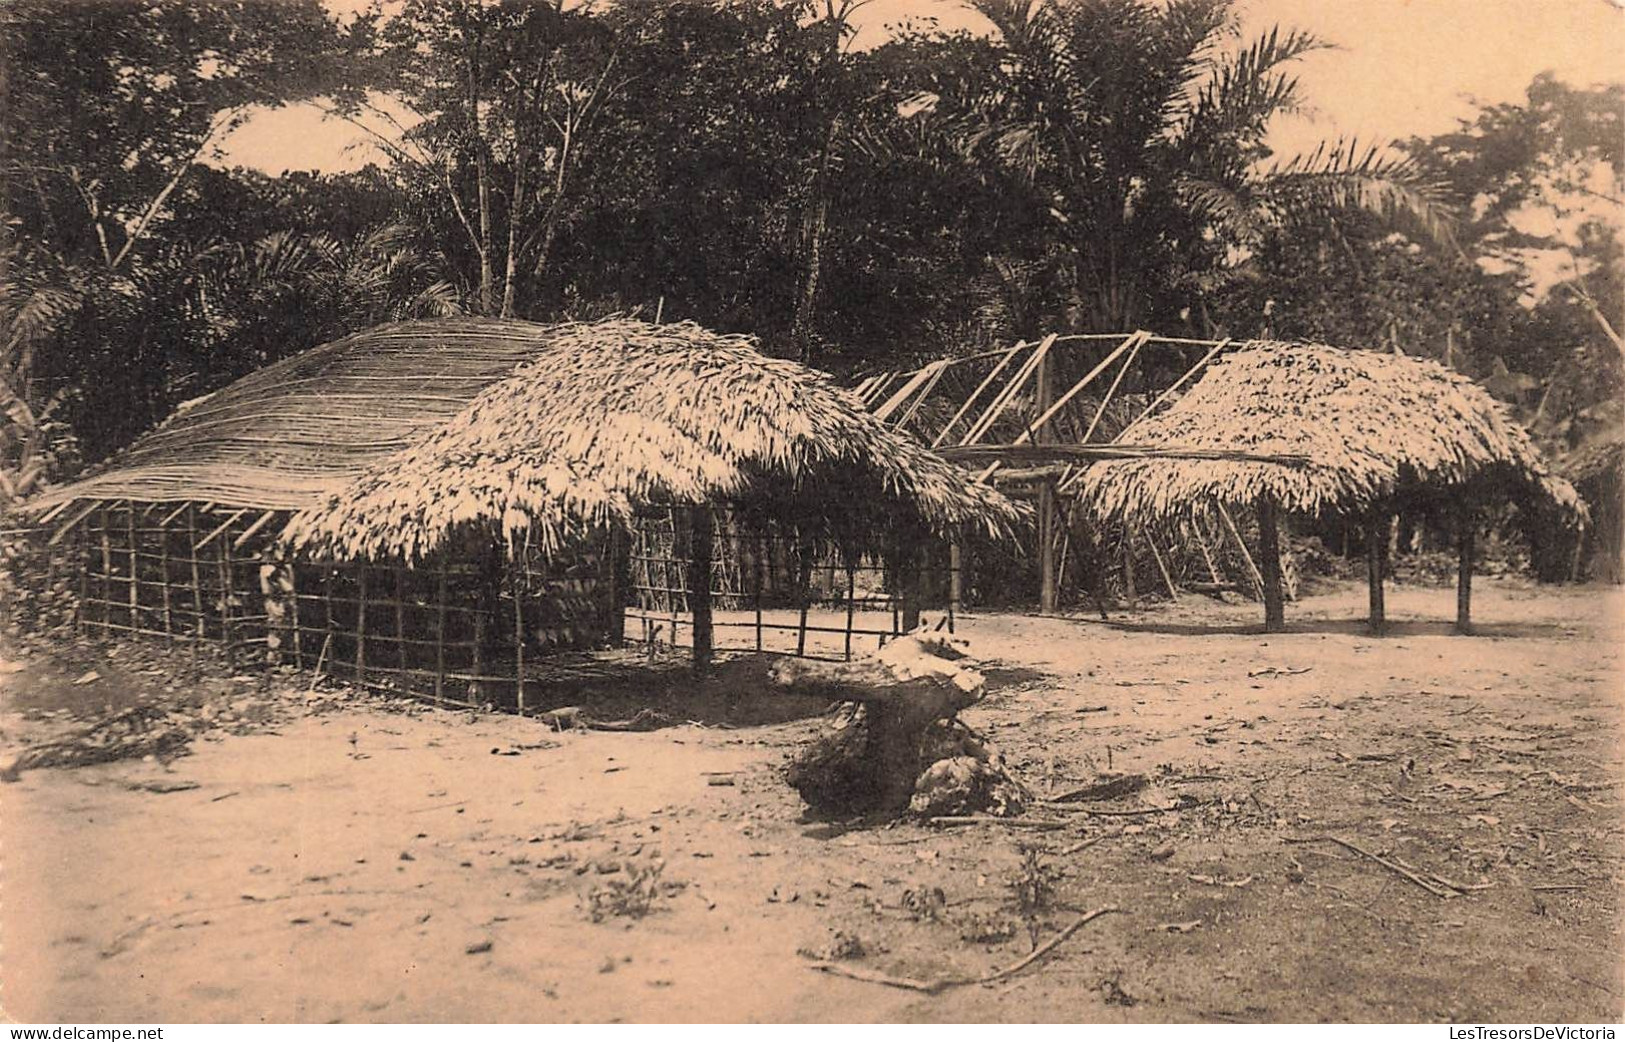 CONGO - Huttes Batitu En Construction - Document Musée Congo - Photo Expédition Maes - Carte Postale Ancienne - Altri & Non Classificati